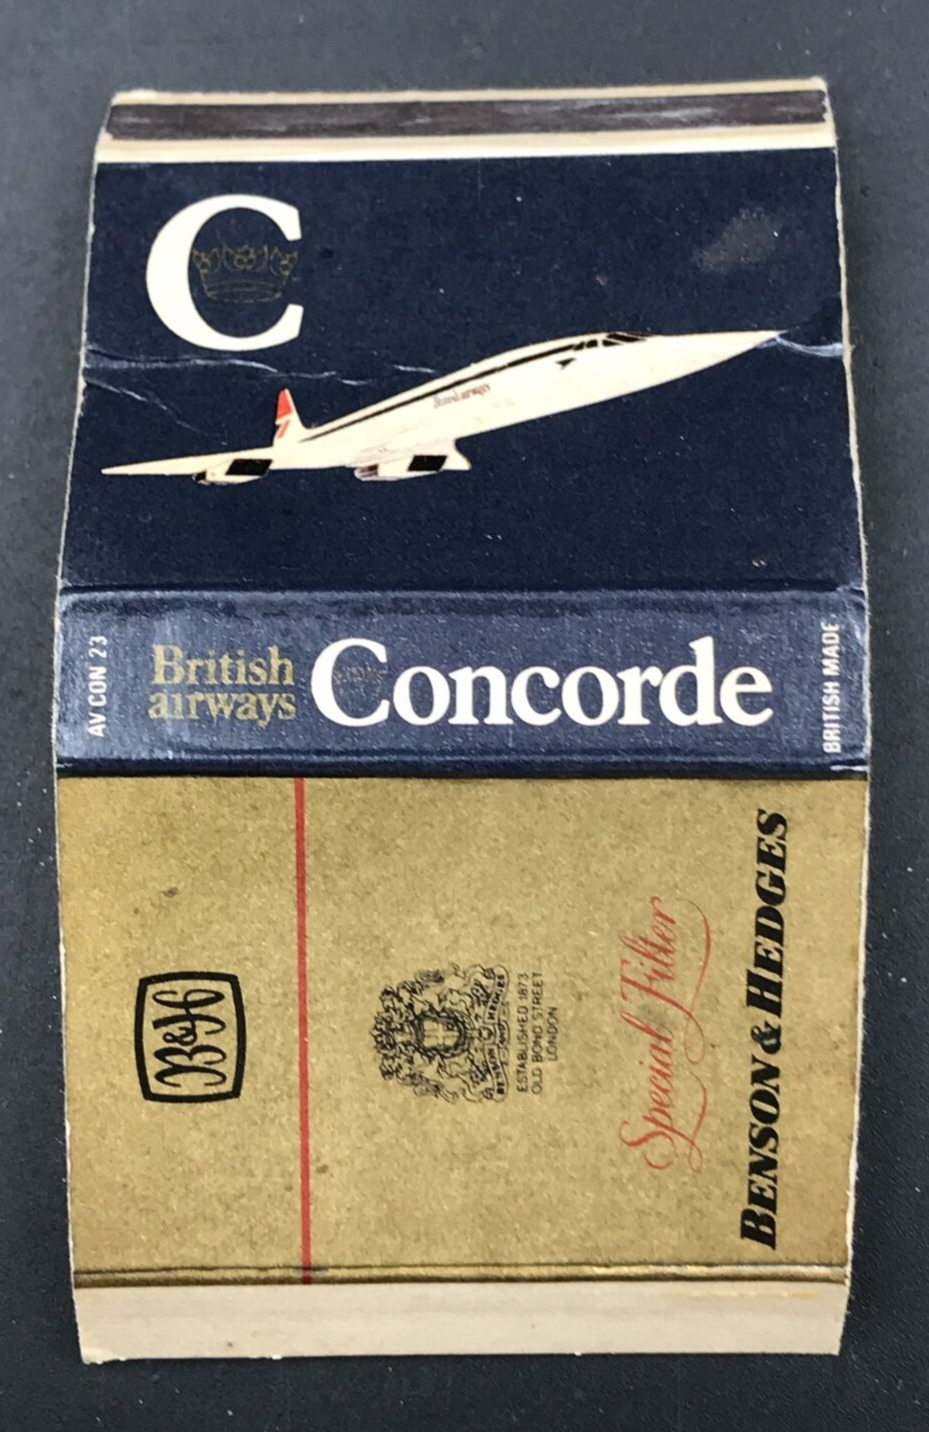 Vintage British Airways Concorde Benson & Hedges Matchbook Box 4 1/8